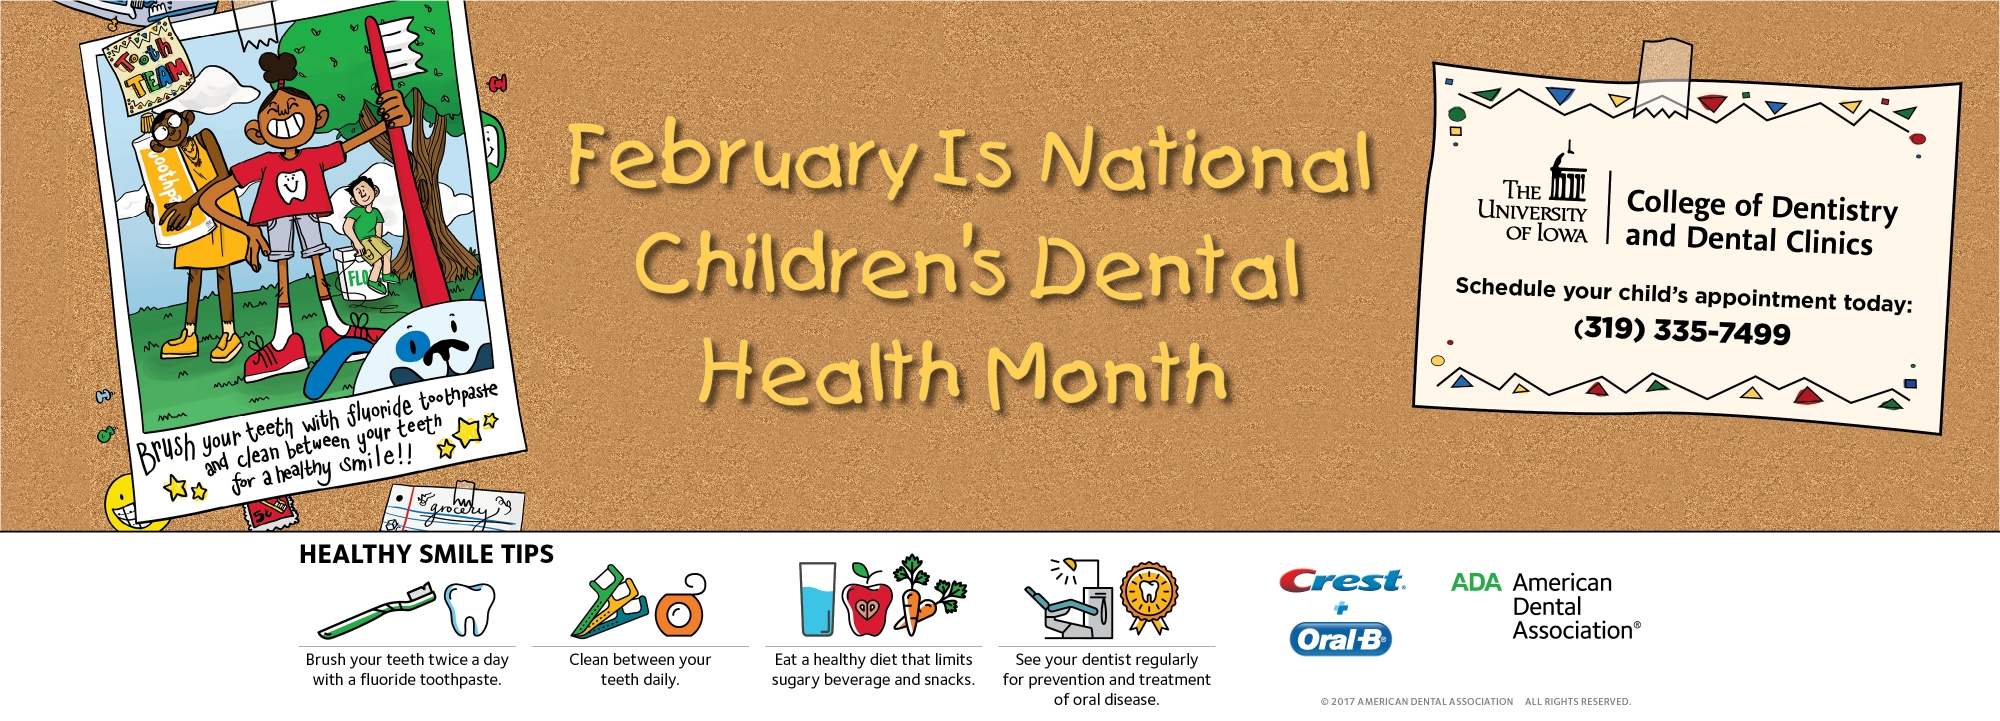 February Children's dental health month